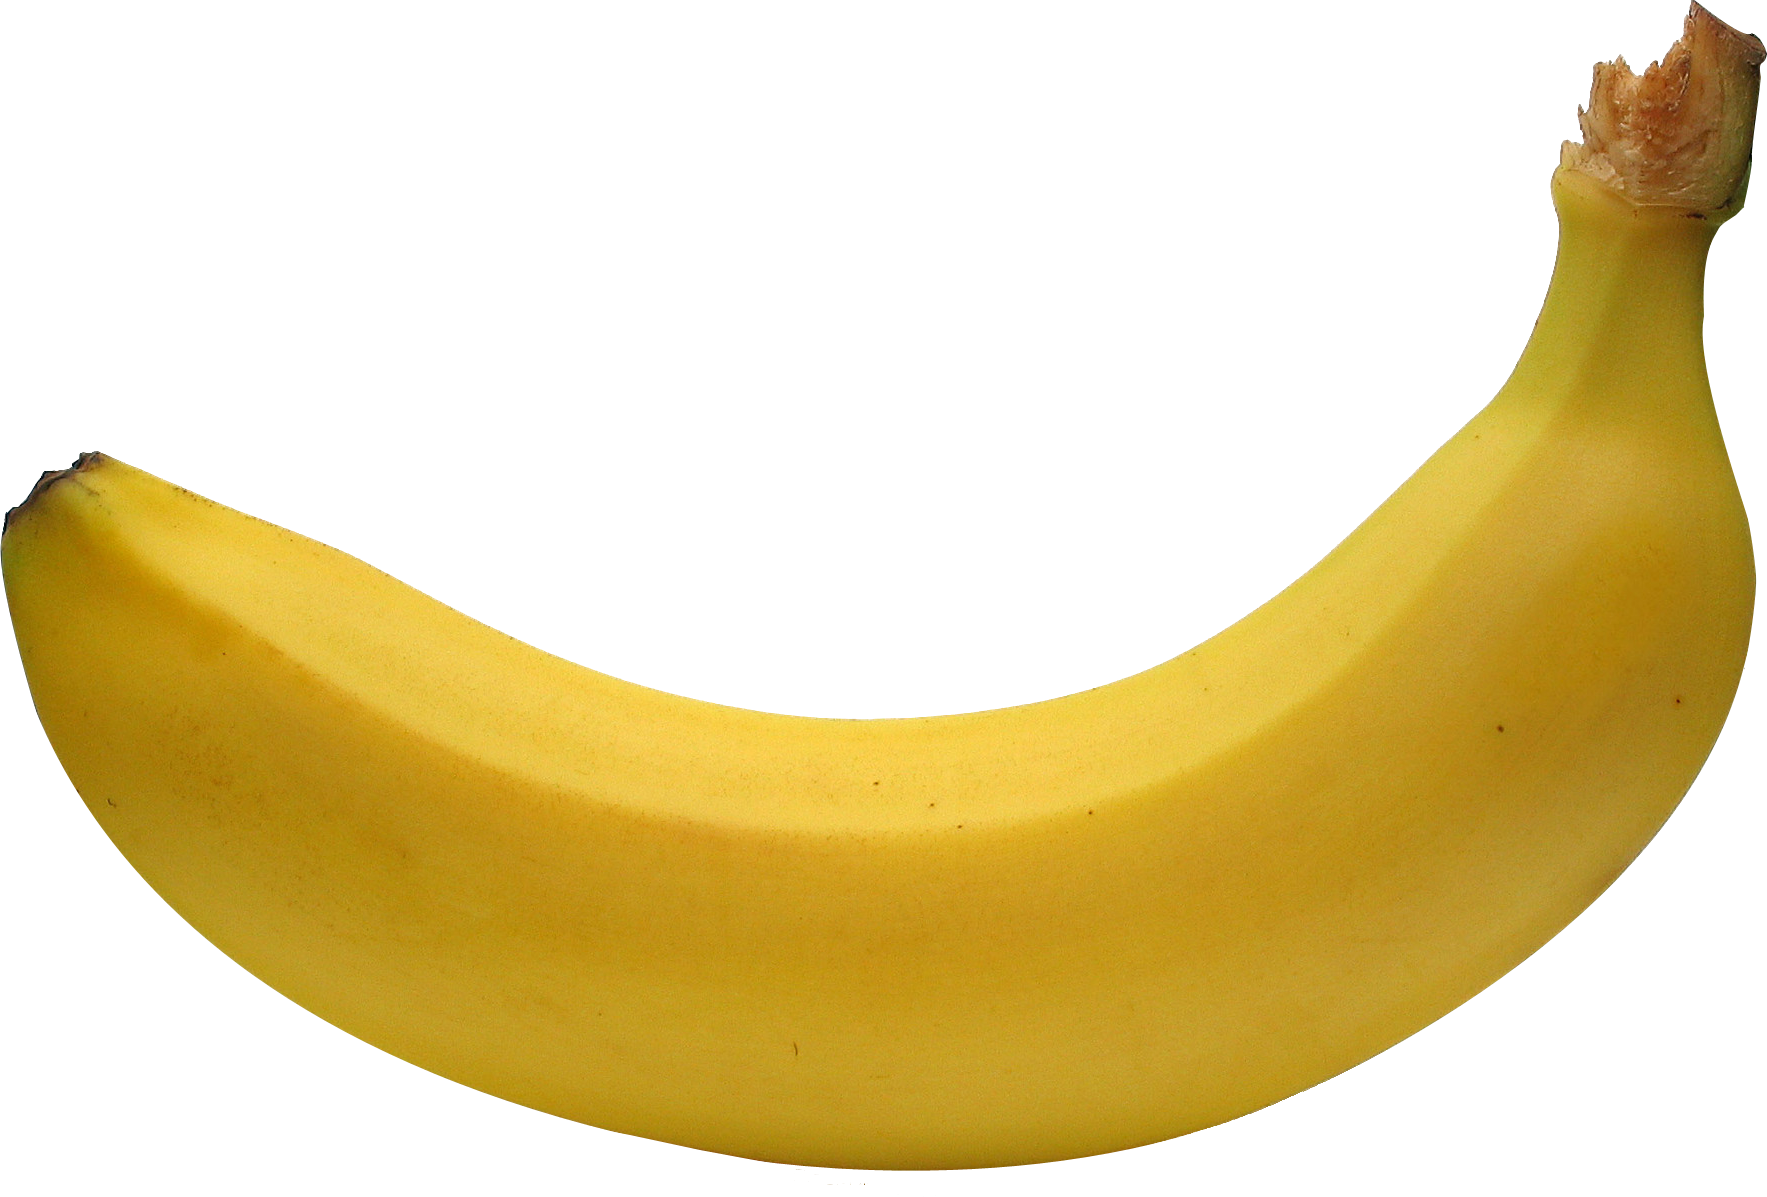 banana_PNG835